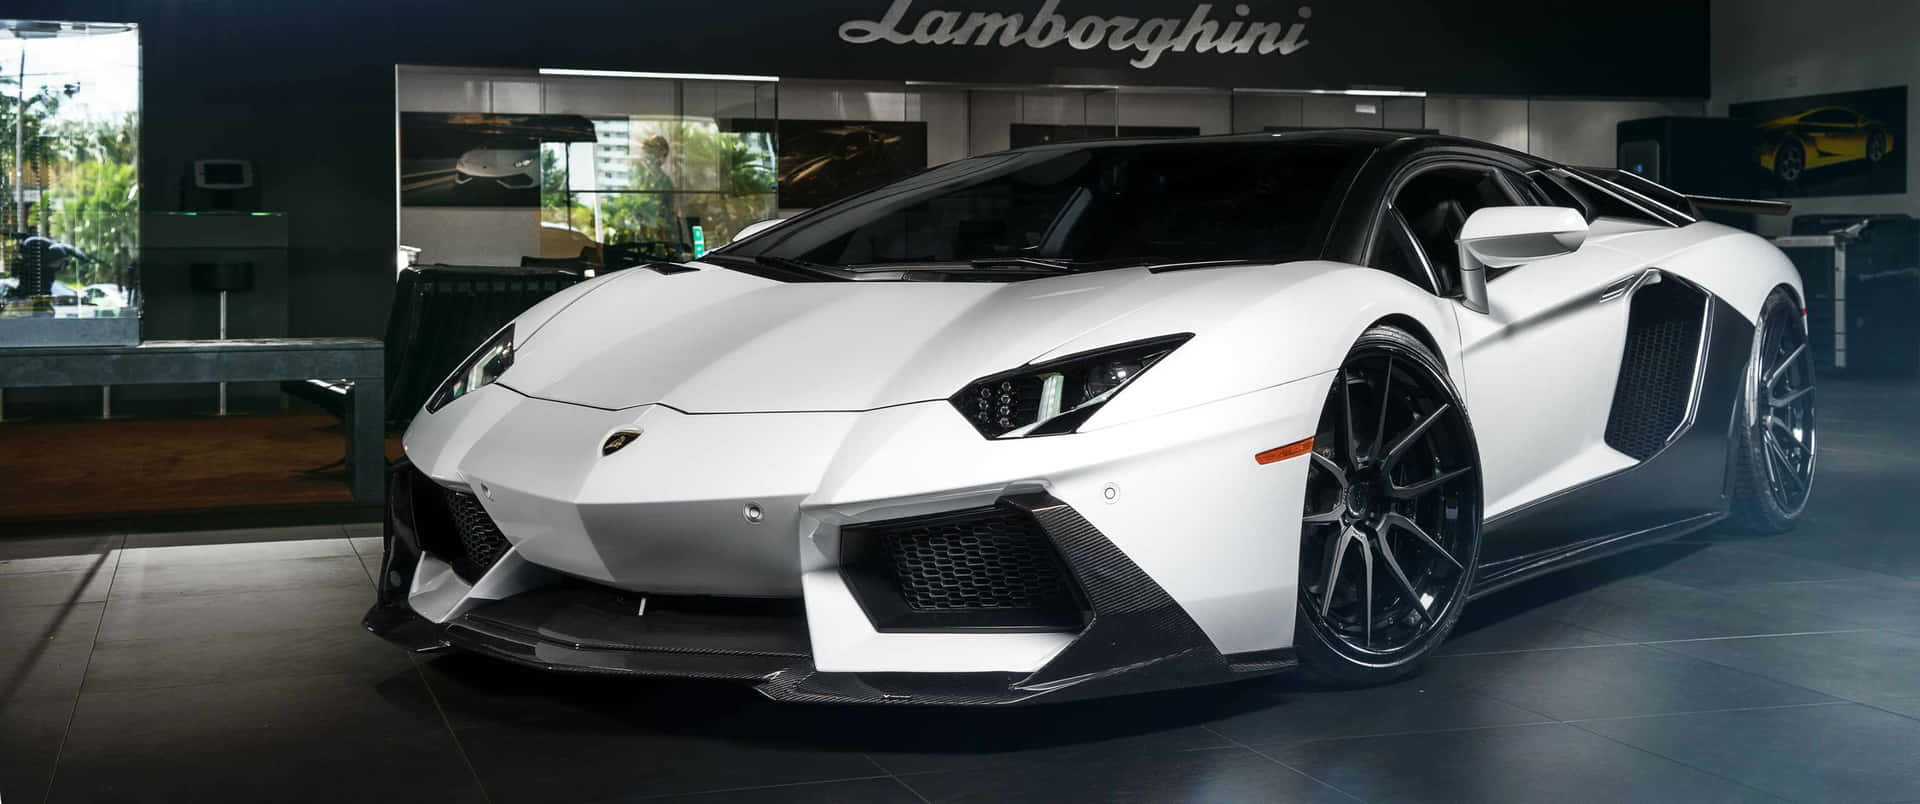 Eldiseño Ultramoderno Del Lamborghini Crea Una Forma Inolvidable.